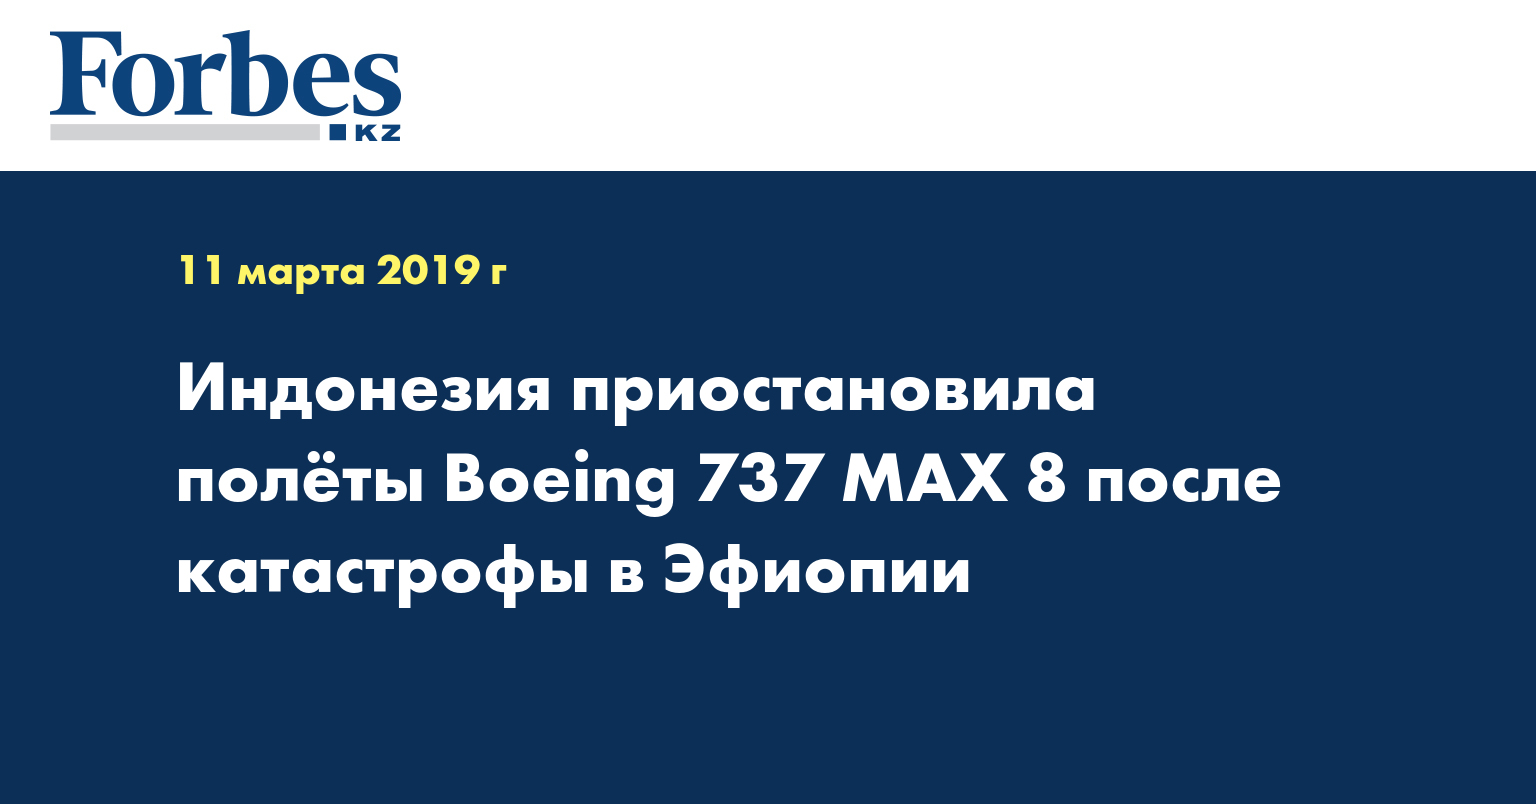 Индонезия приостановила полеты Boeing 737MAX 8 после катастрофы в Эфиопии